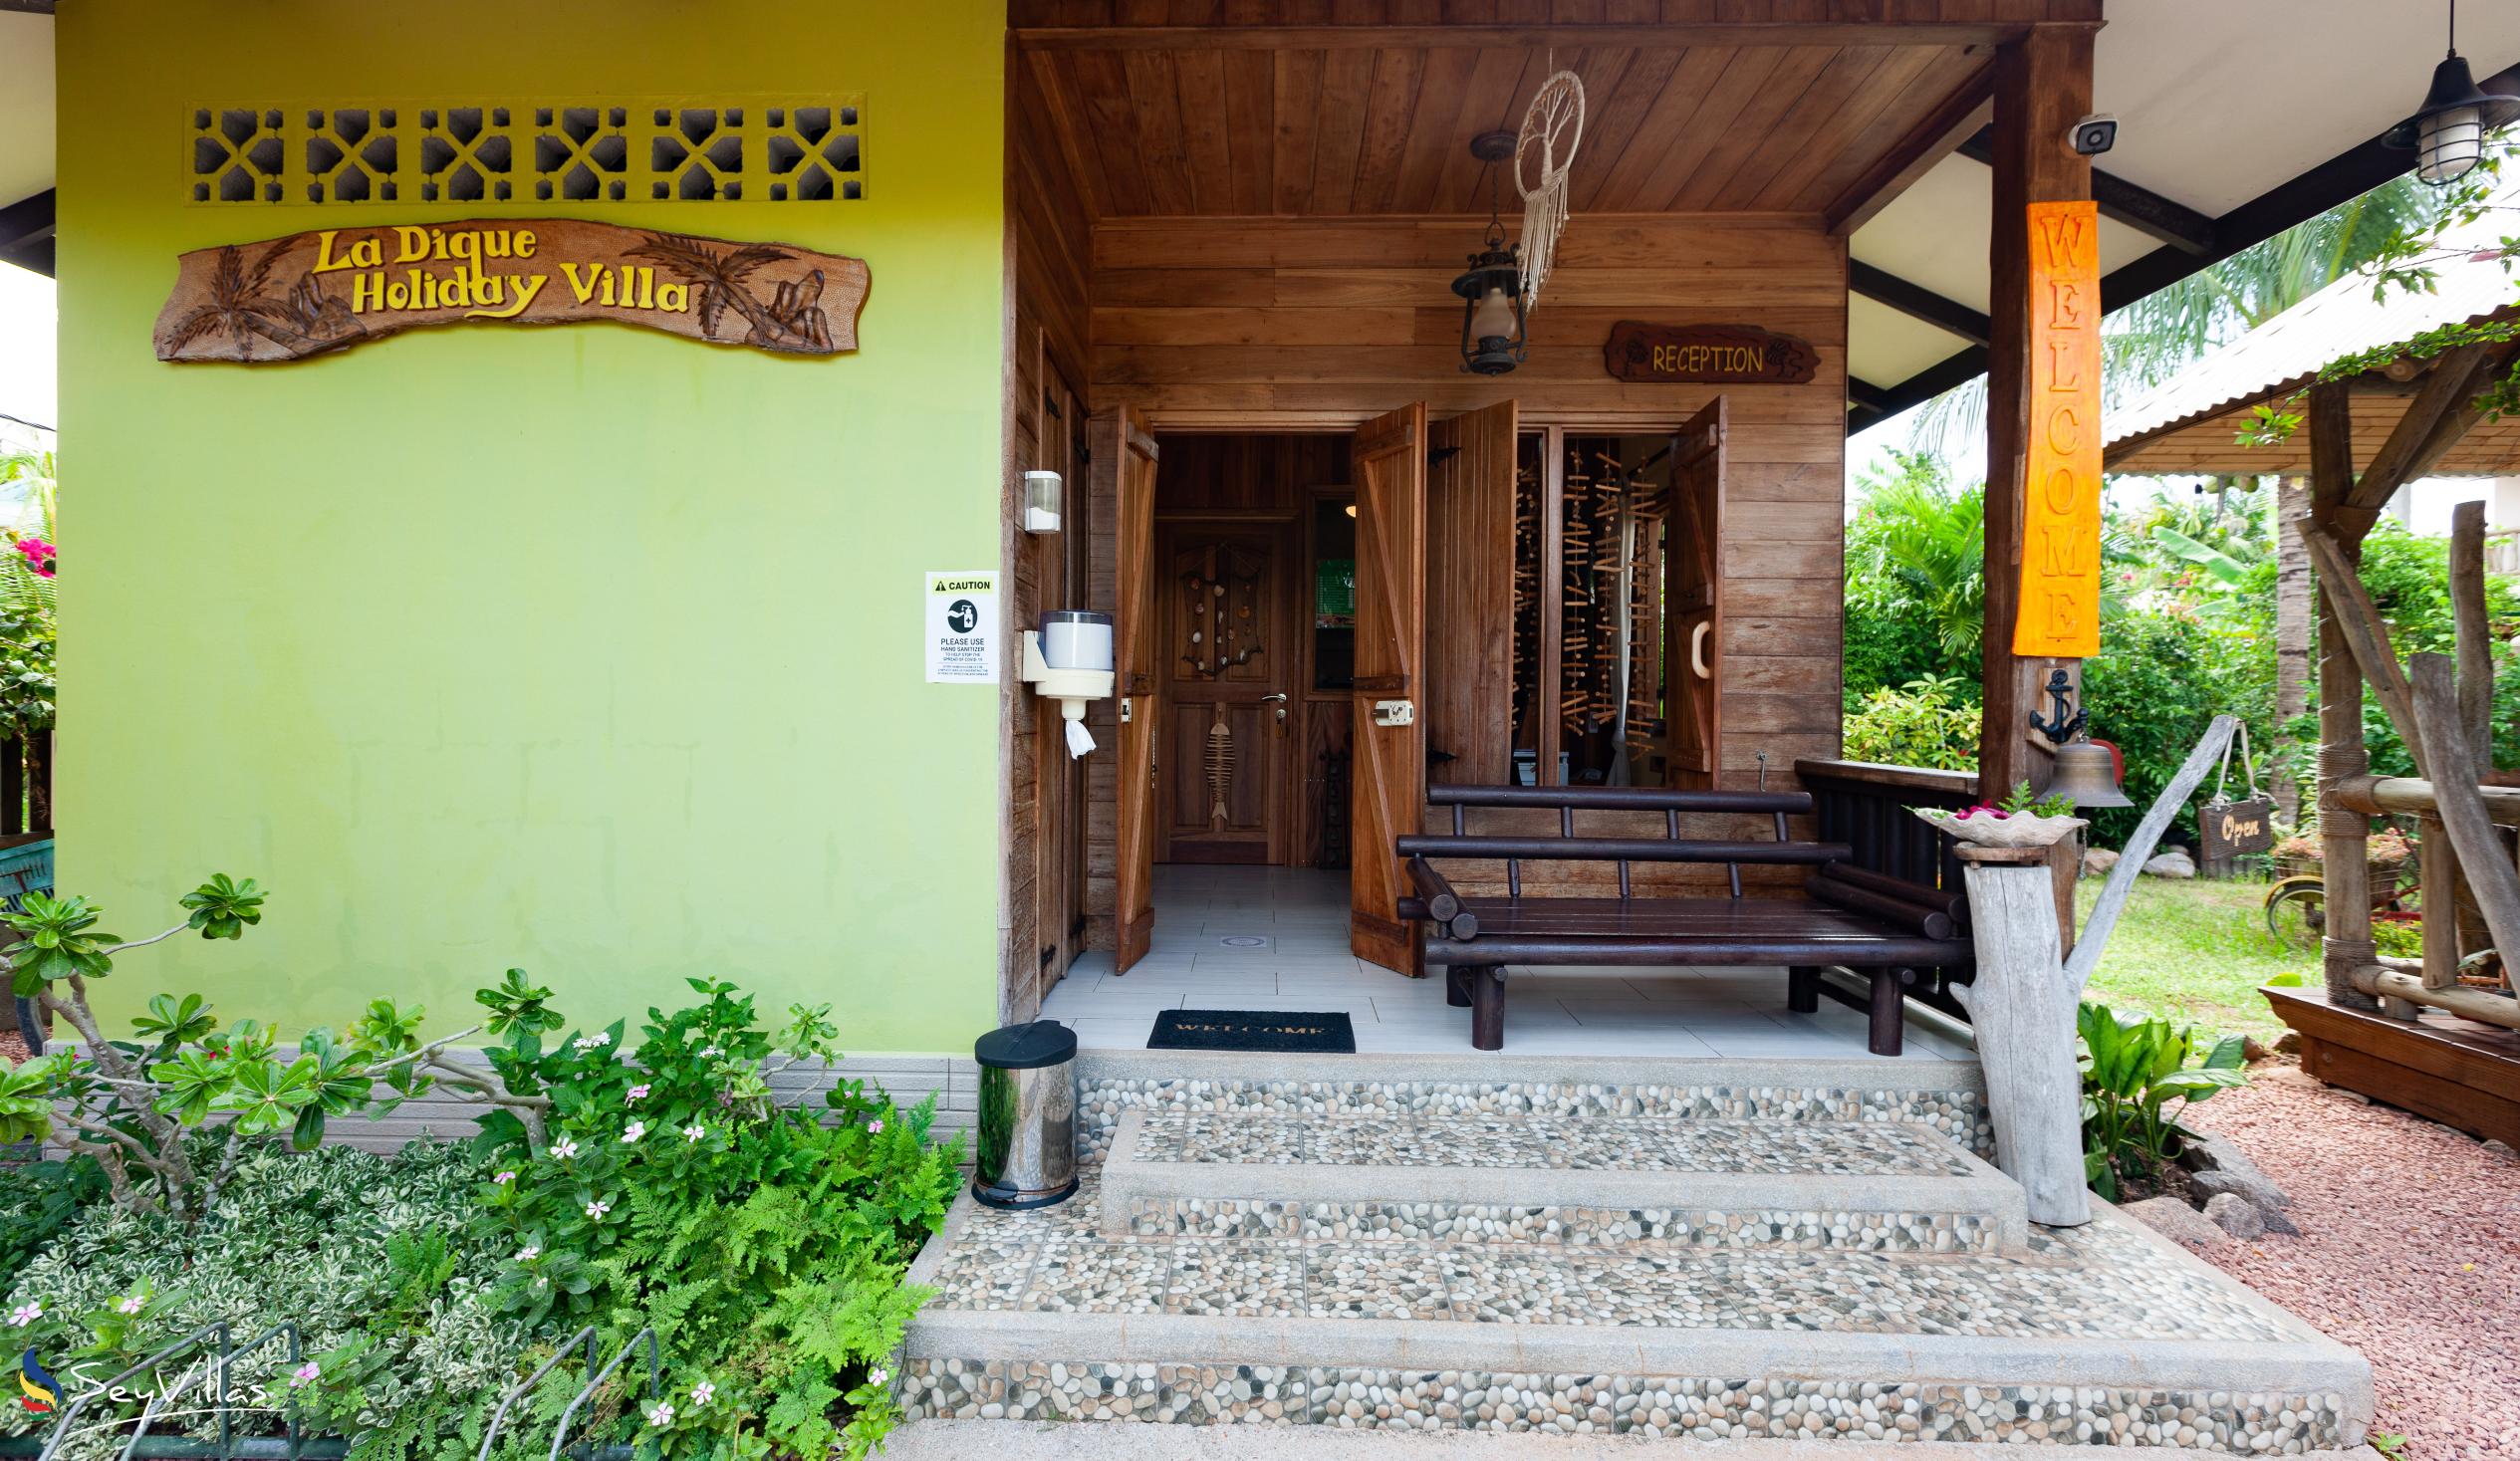 Foto 34: La Digue Holiday Villa - Interno - La Digue (Seychelles)